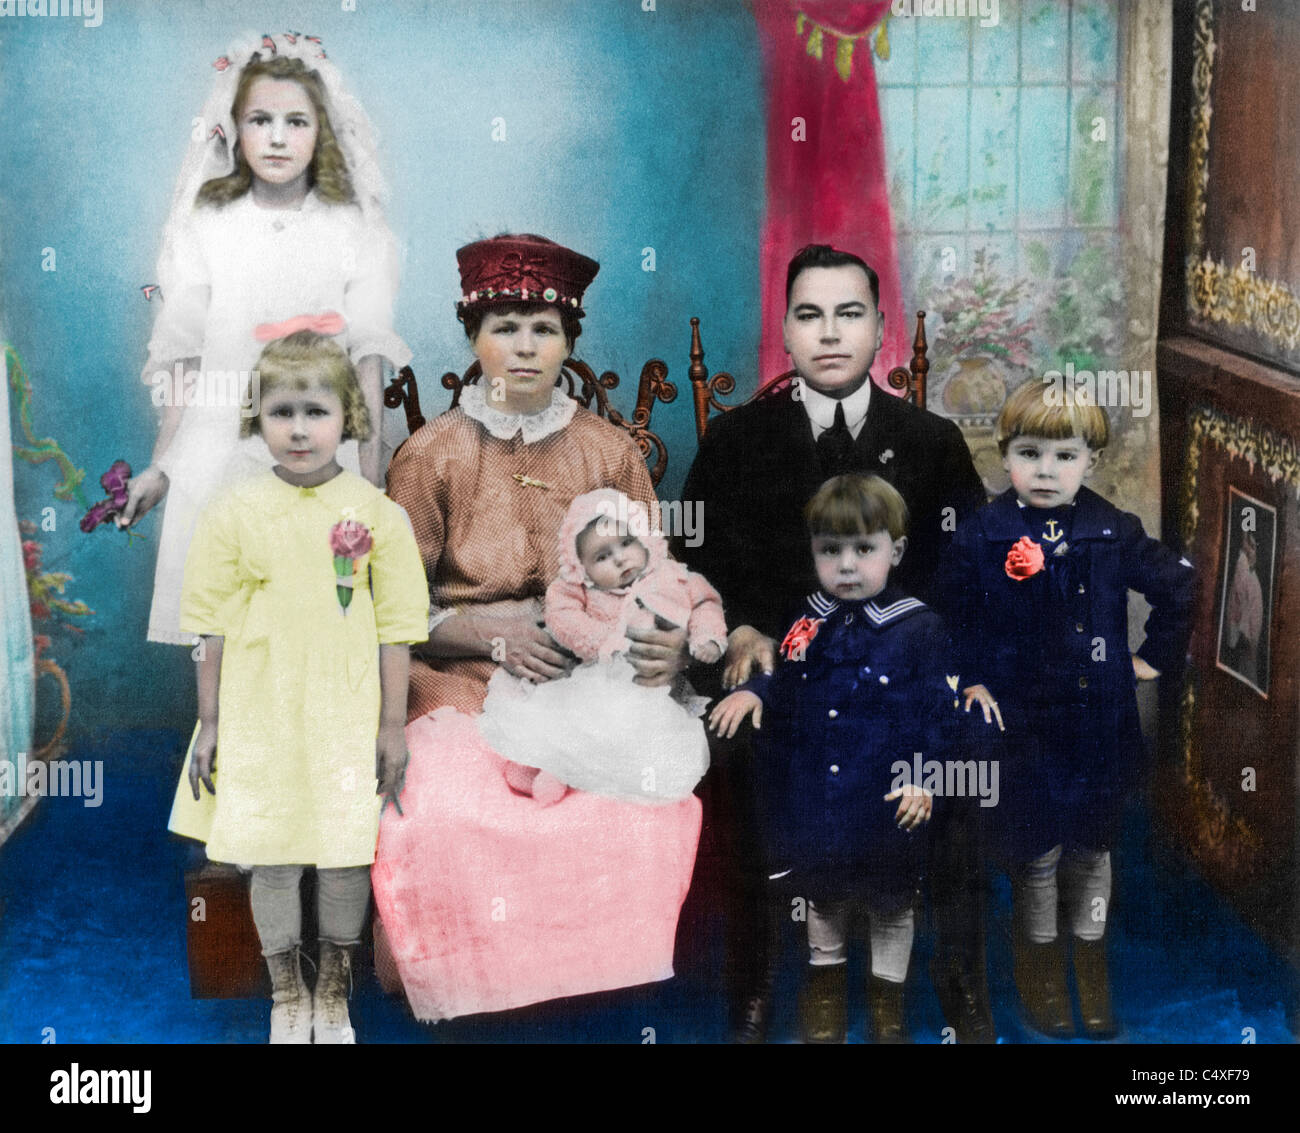 Photo colorisée de famille d'immigrants ukrainiens au nord, vers 1920 Banque D'Images